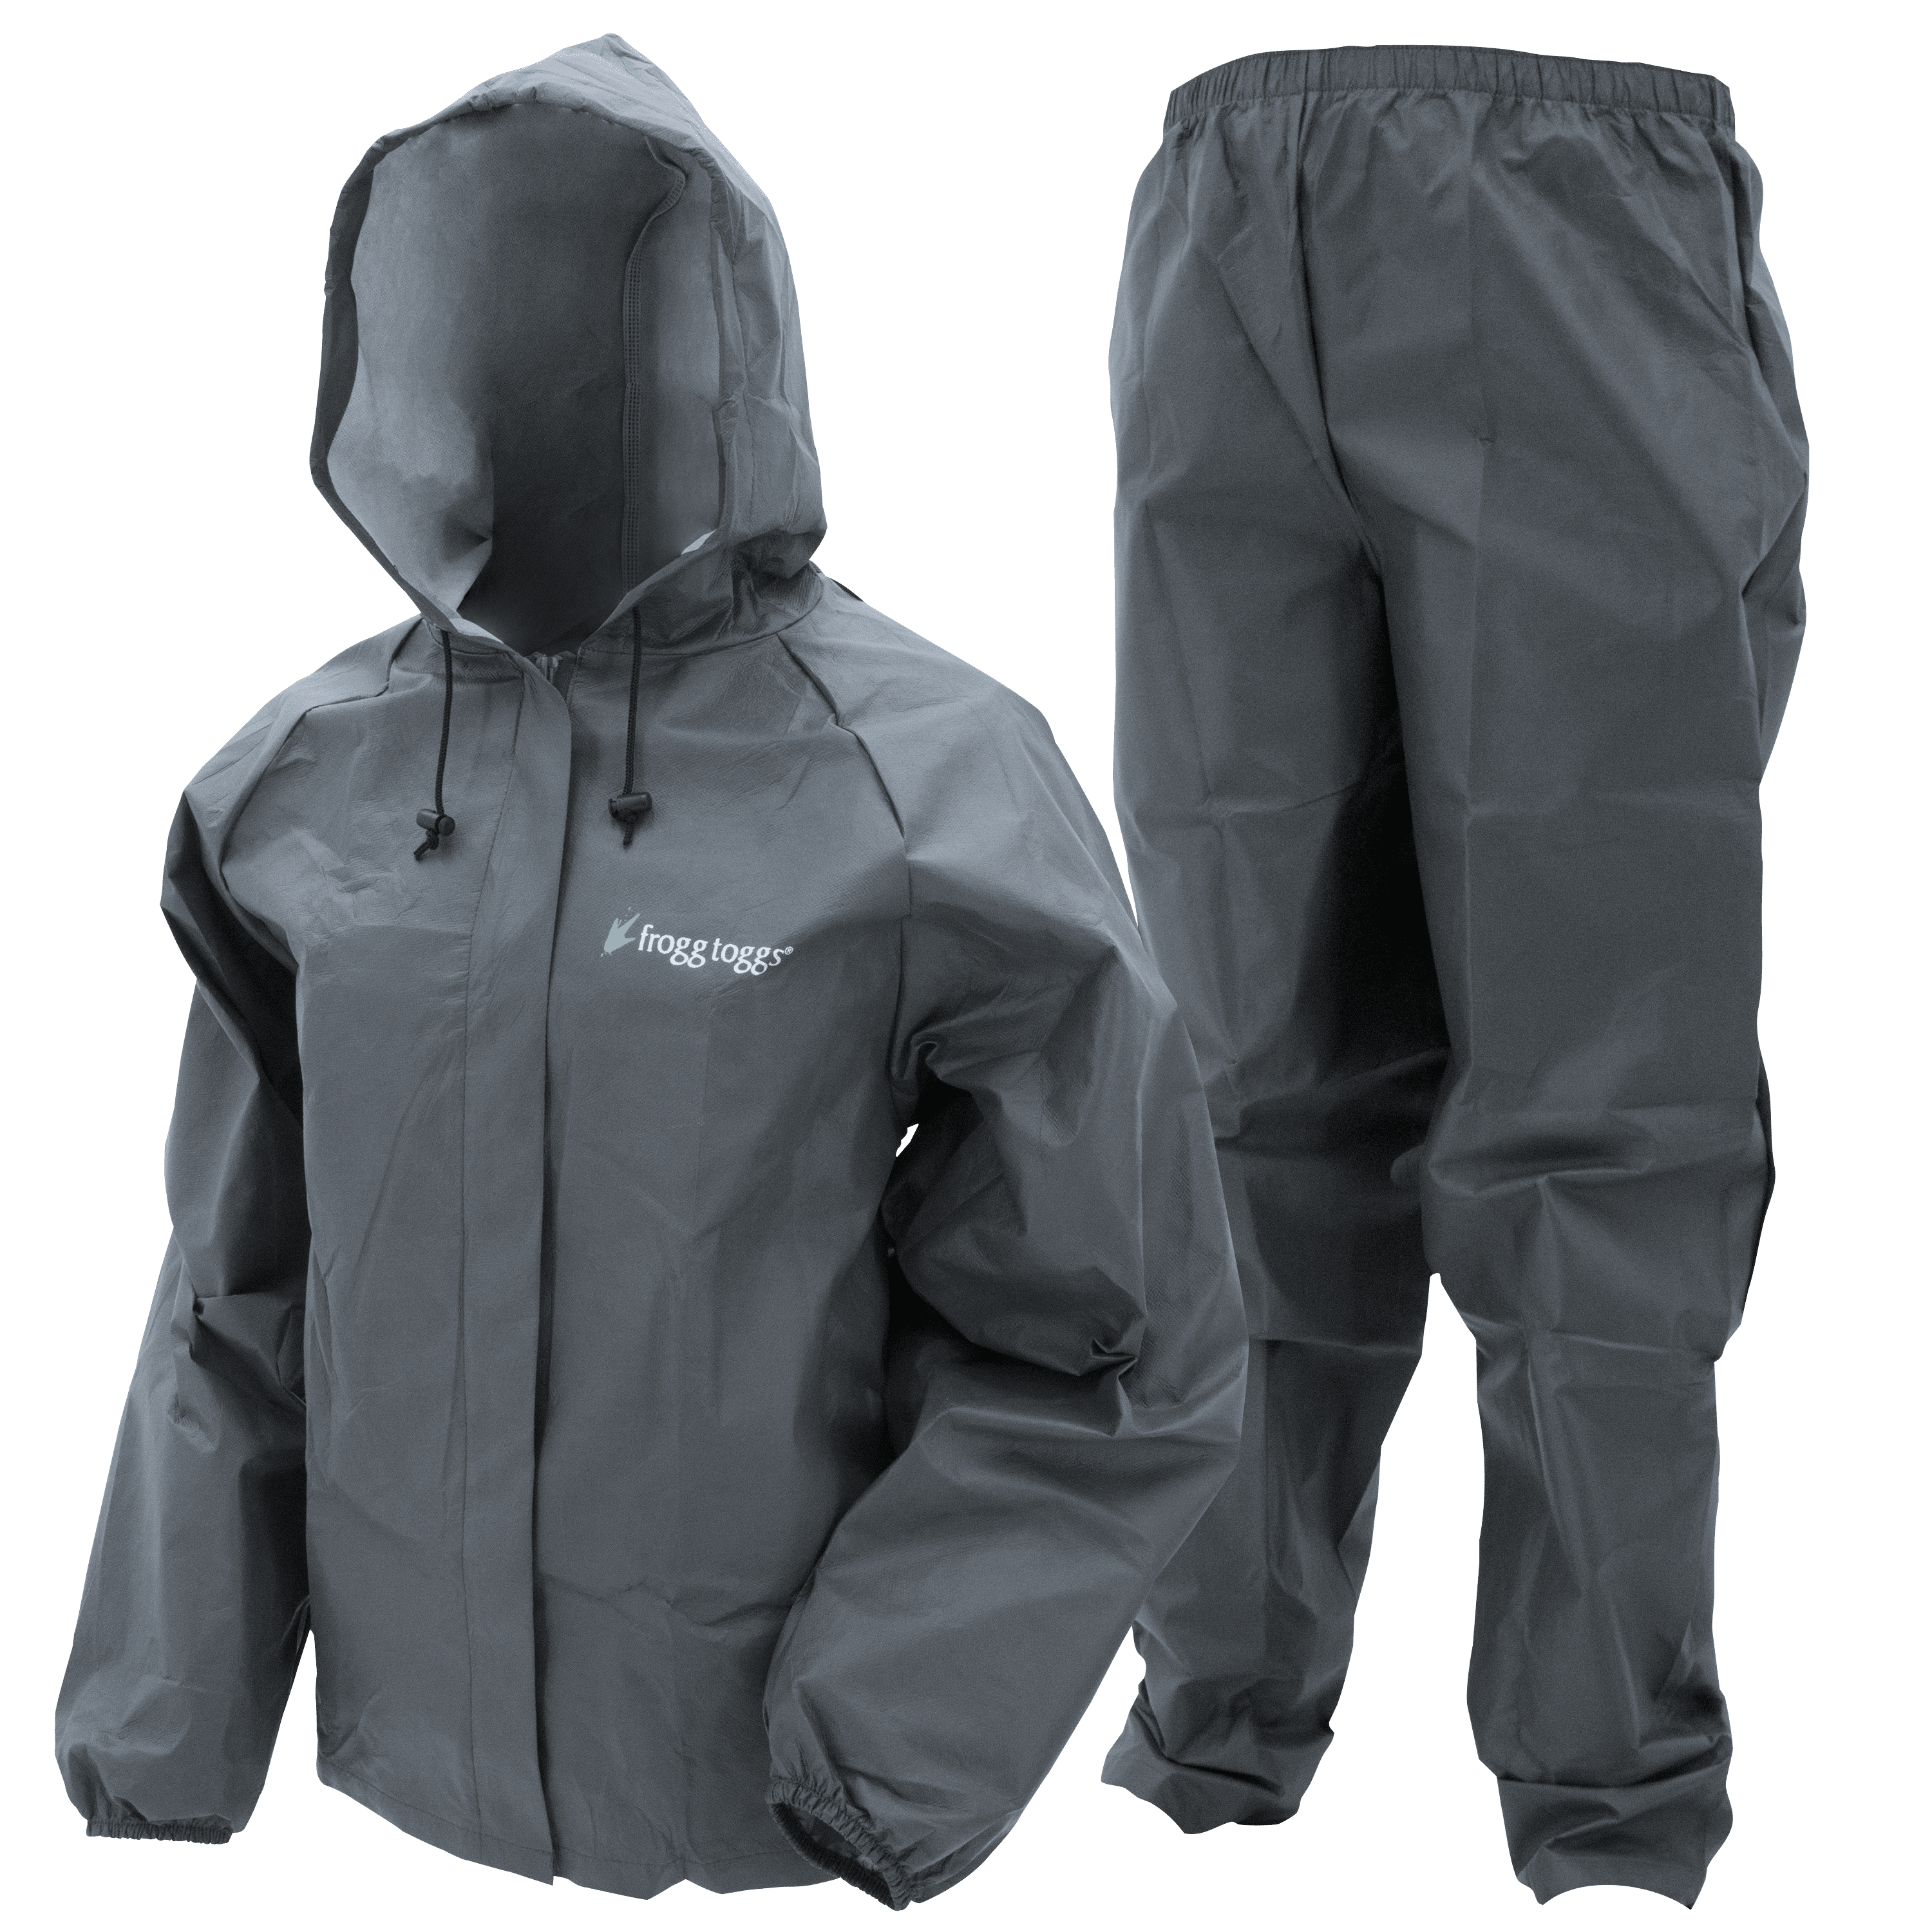 Details about   Rain Suit Ultra Lite Waterproof Jacket Pants Gear Wear Frogg Toggs S M L XL XXL 